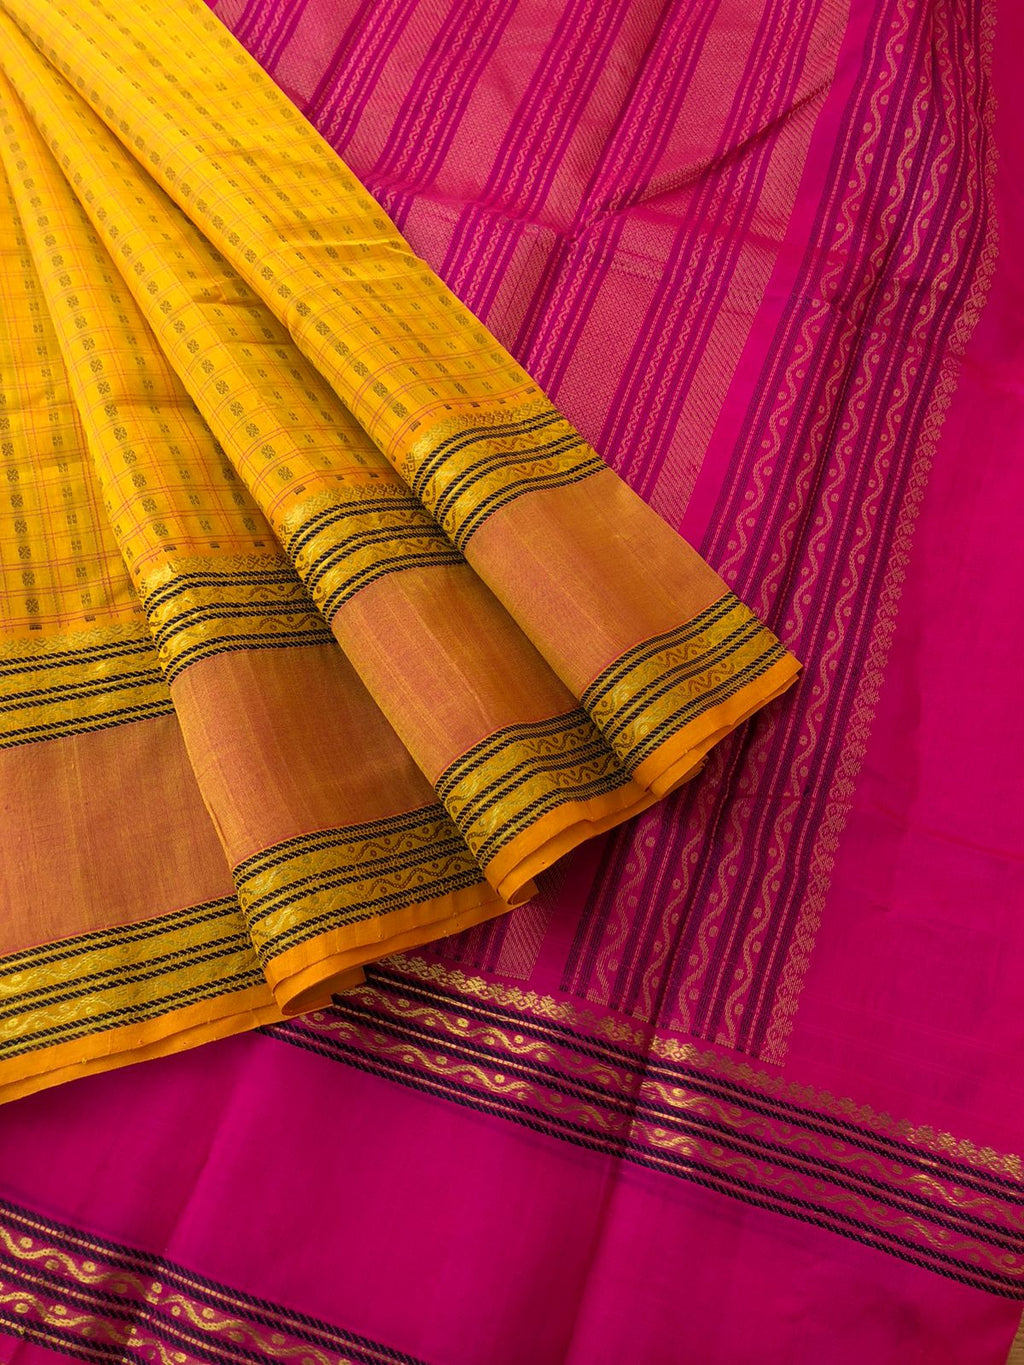 Woven Motifs Silk Cotton - mango yellow and pink Lakshadeepam